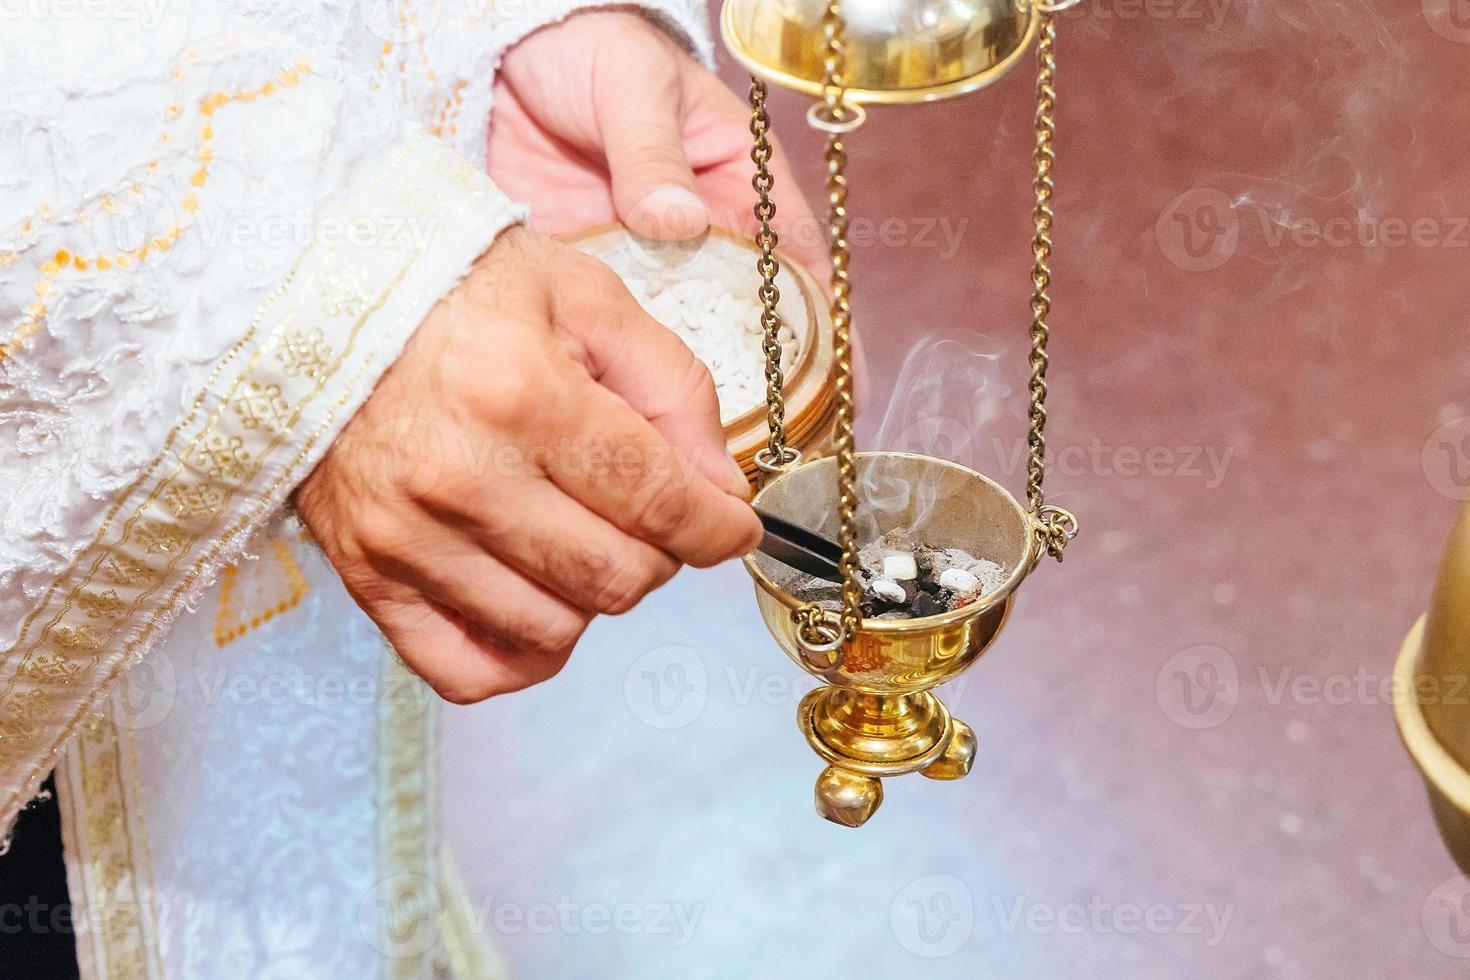 sacerdote che canta in un sermone cristiano incensiere rito della chiesa foog foto